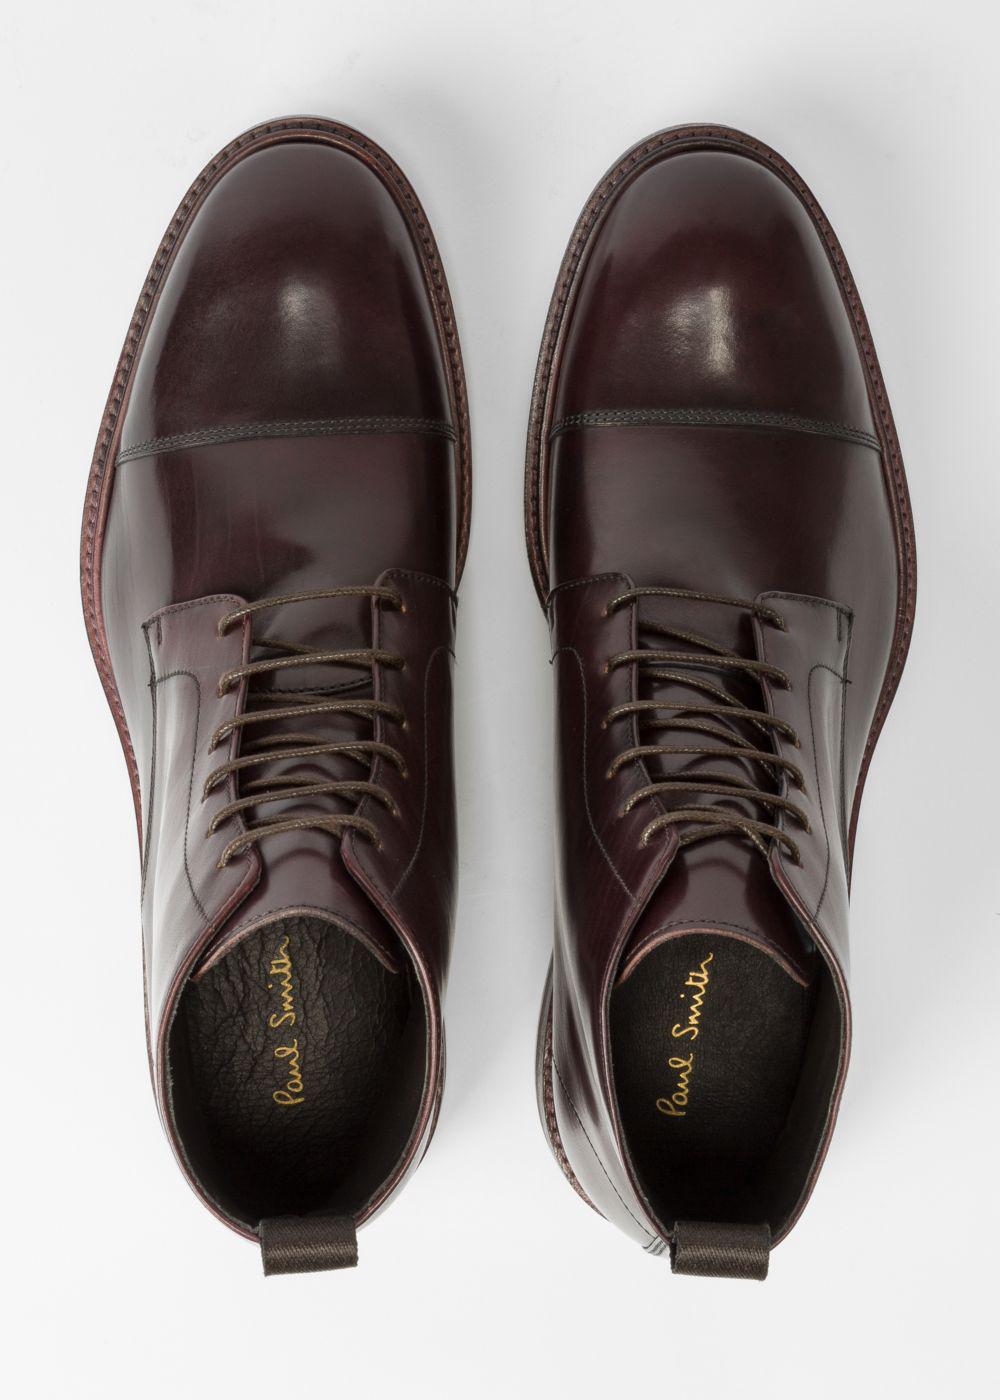 Paul Smith Men's Bordeaux Leather 'Cesar' Boots for Men - Lyst